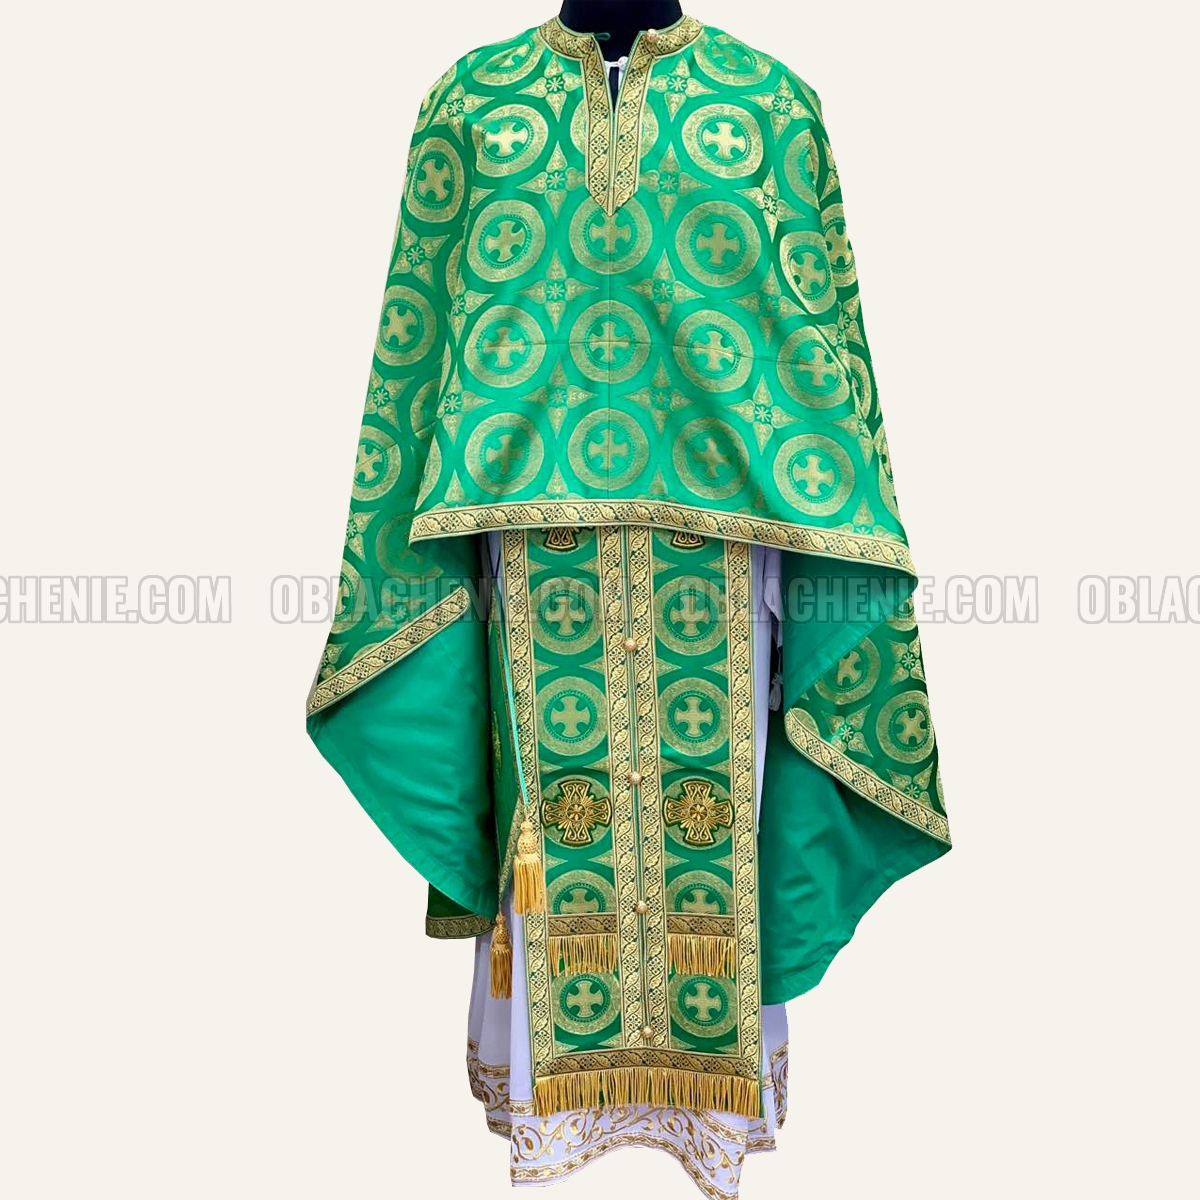 Priest's vestments 10659